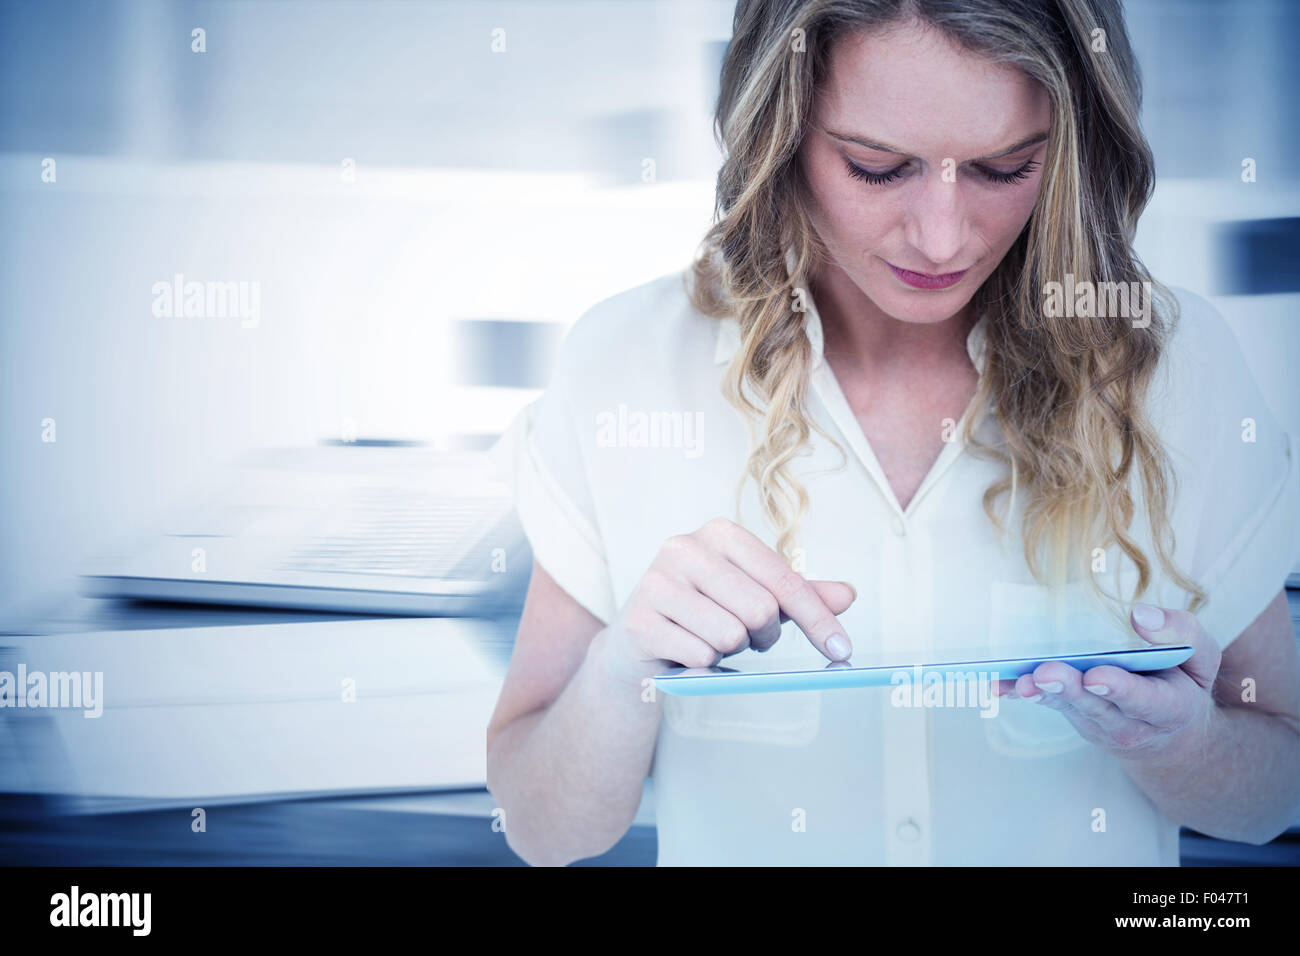 Immagine composita della donna utilizzando un tablet pc Foto Stock